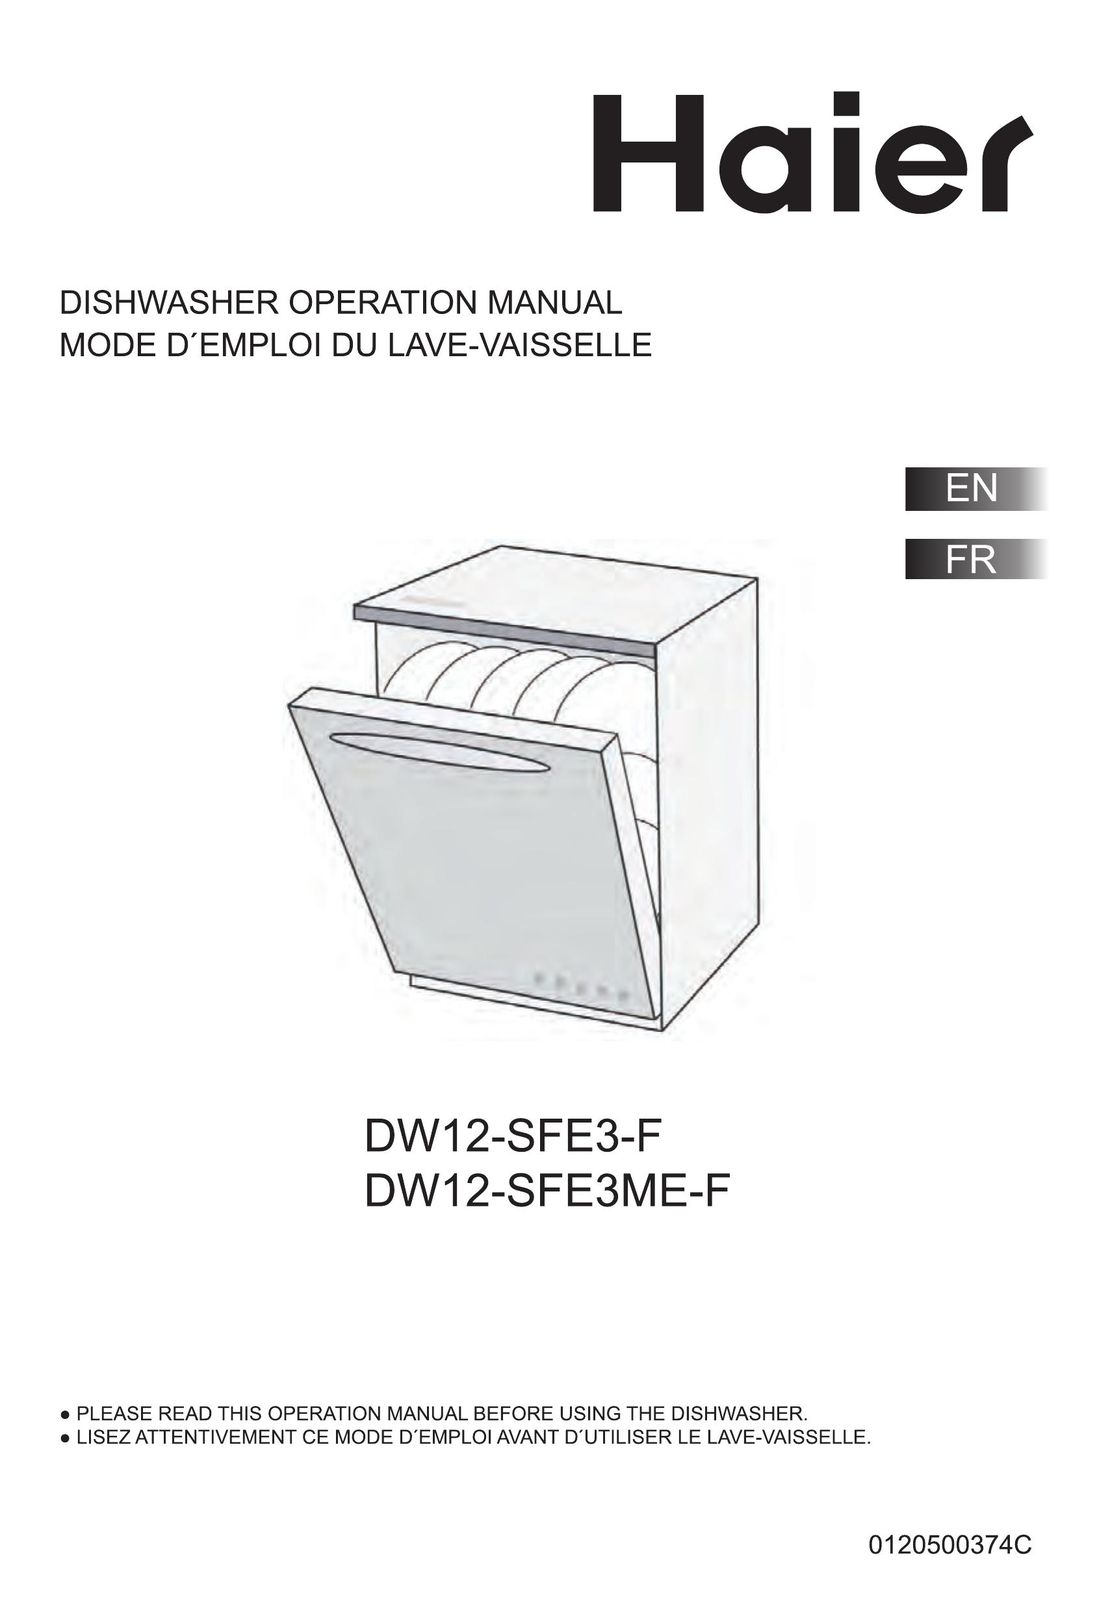 Haier DW12-SFE3-F Dishwasher User Manual